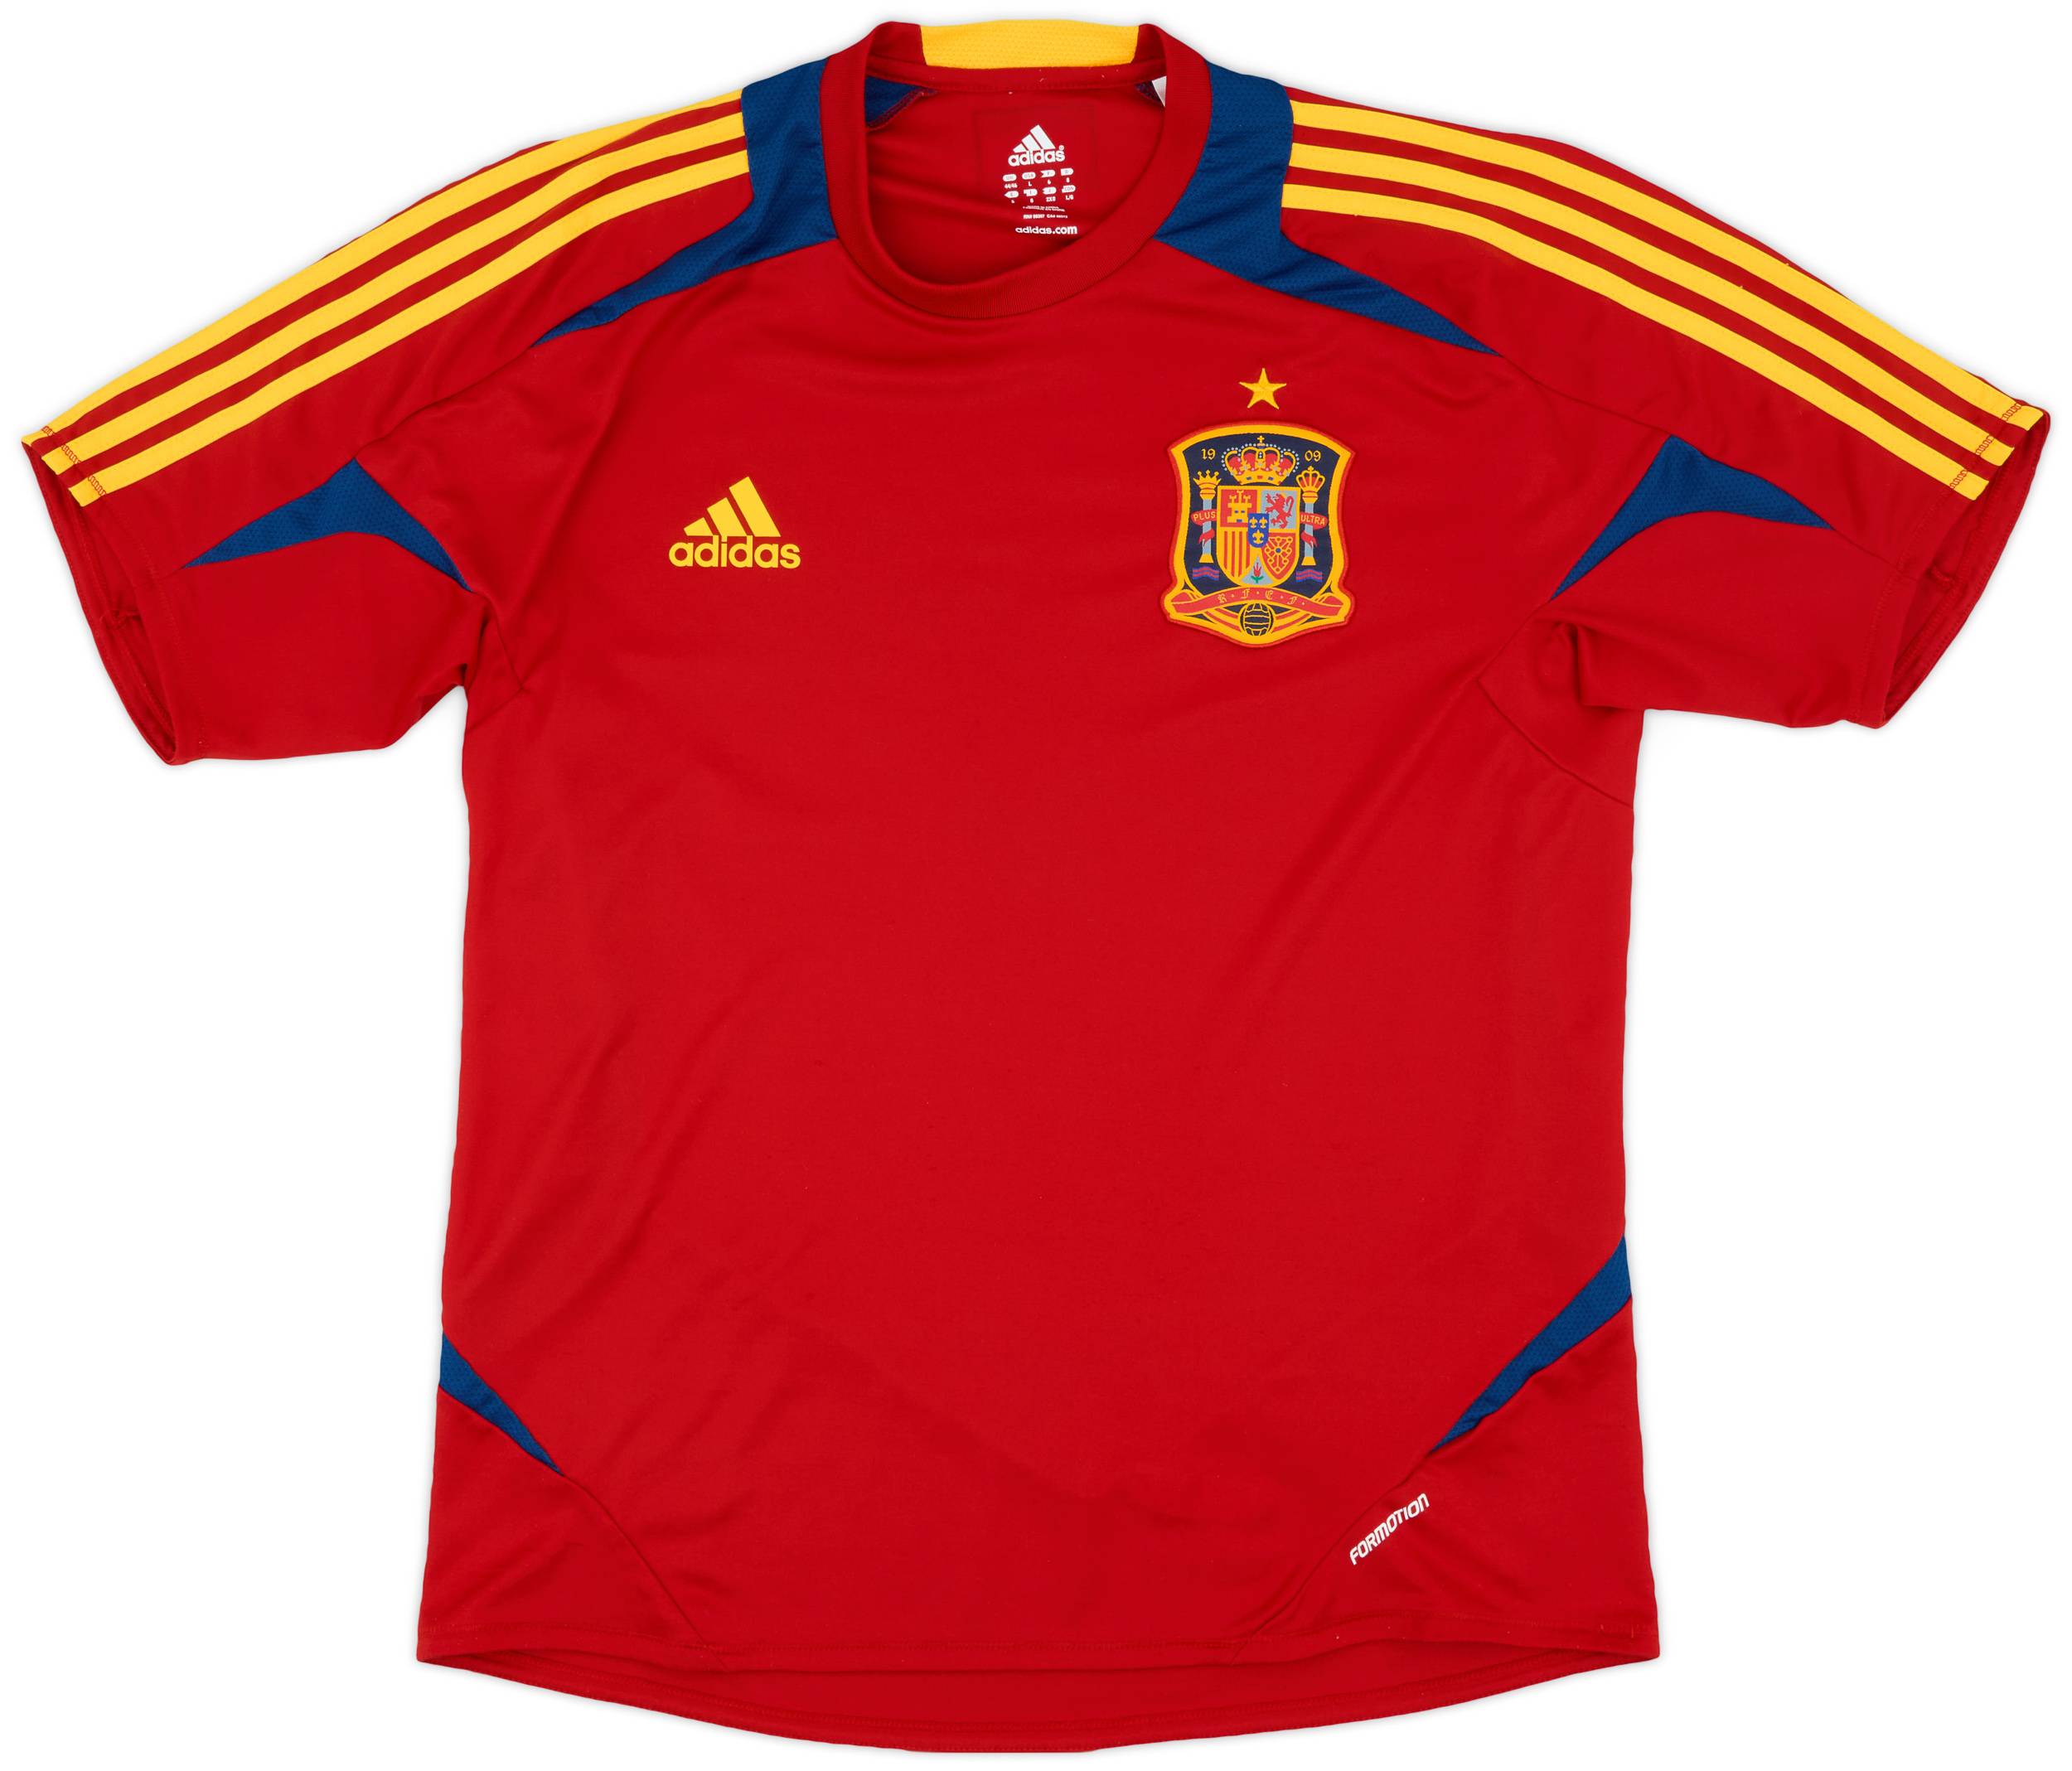 2011-12 Spain adidas Formotion Training Shirt - 9/10 - (L/XL)